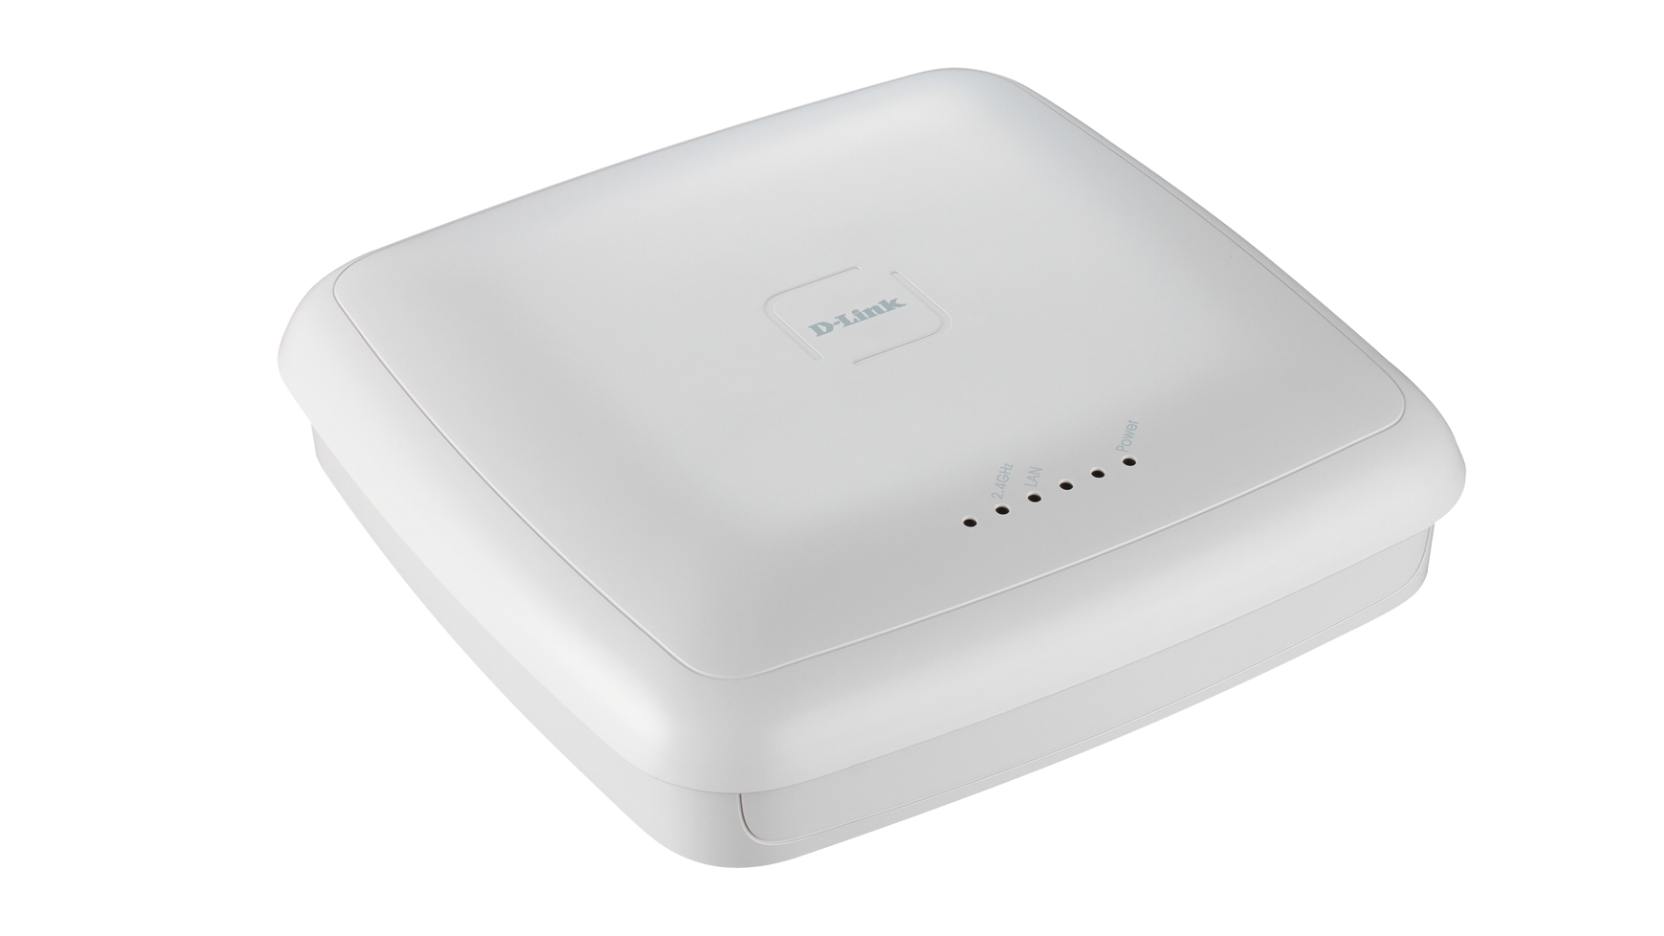 DWL-3600AP Unified Wireless N PoE Access Point | D-Link UK